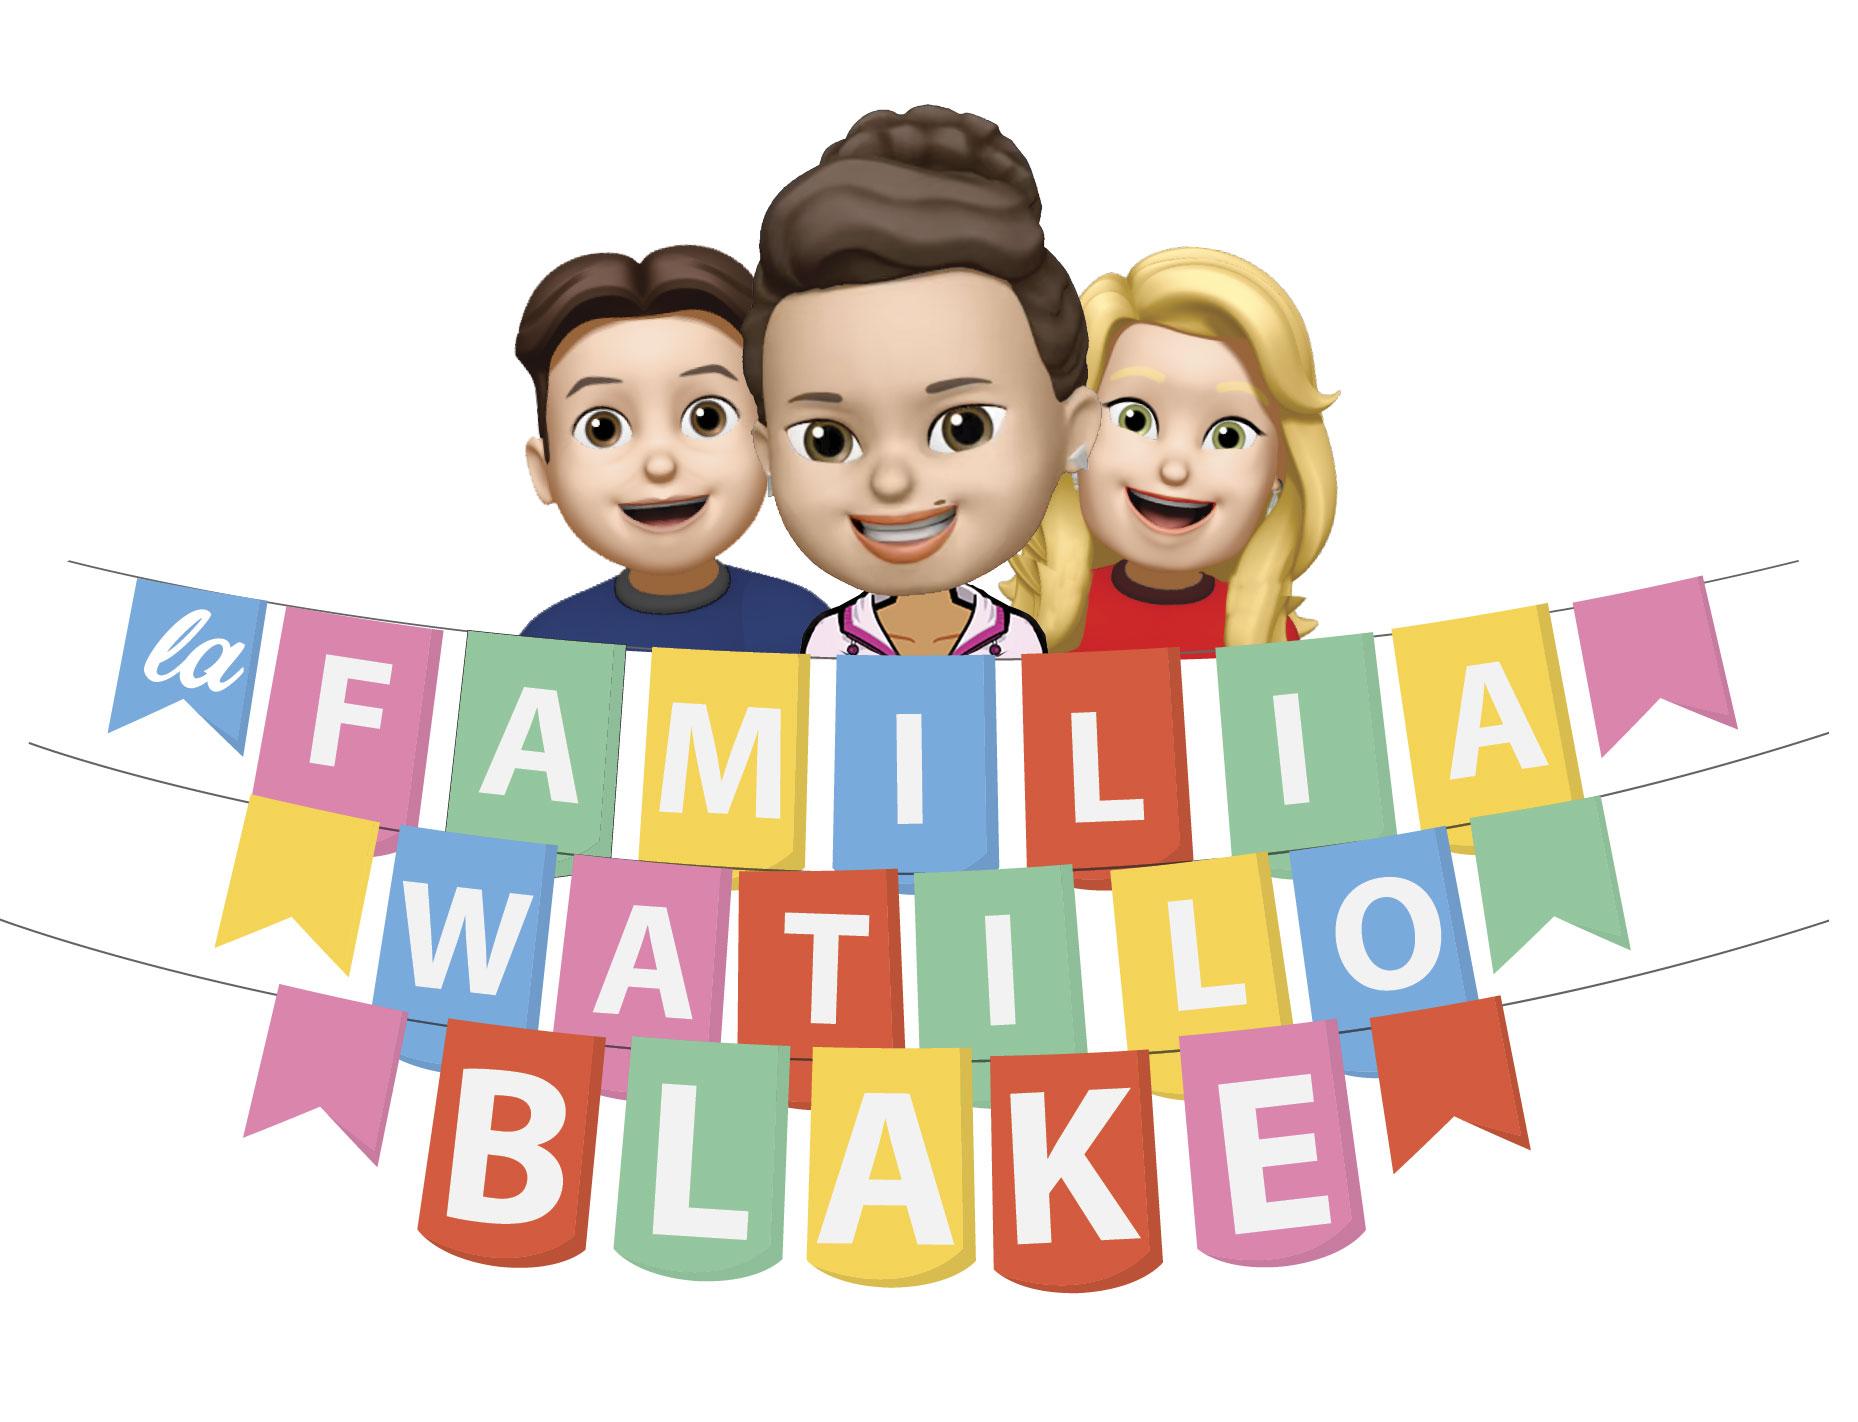 La Familia Watilo Blake